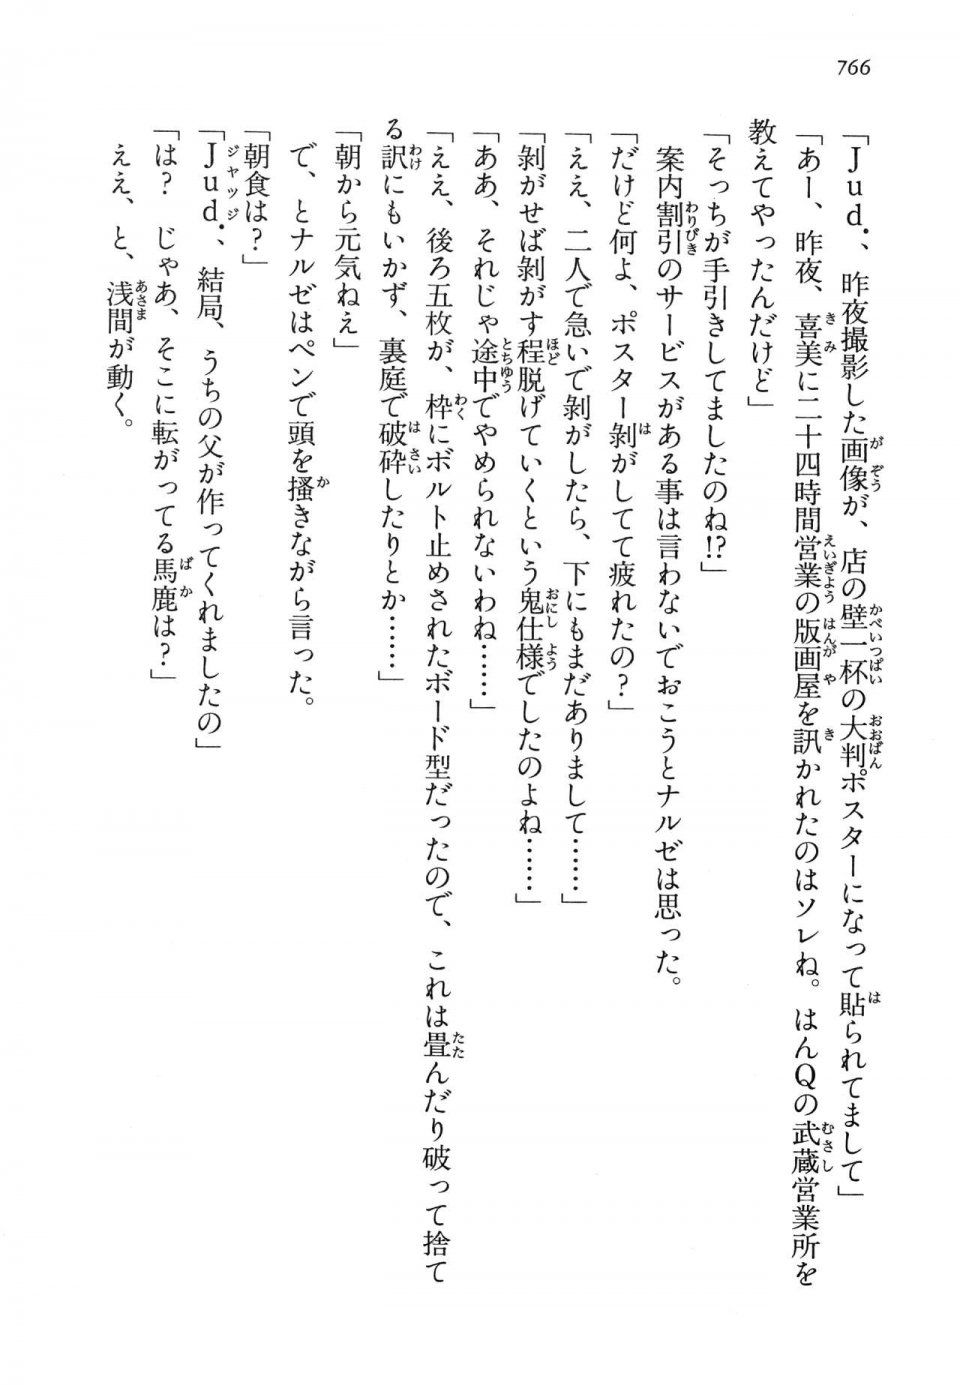 Kyoukai Senjou no Horizon LN Vol 14(6B) - Photo #766